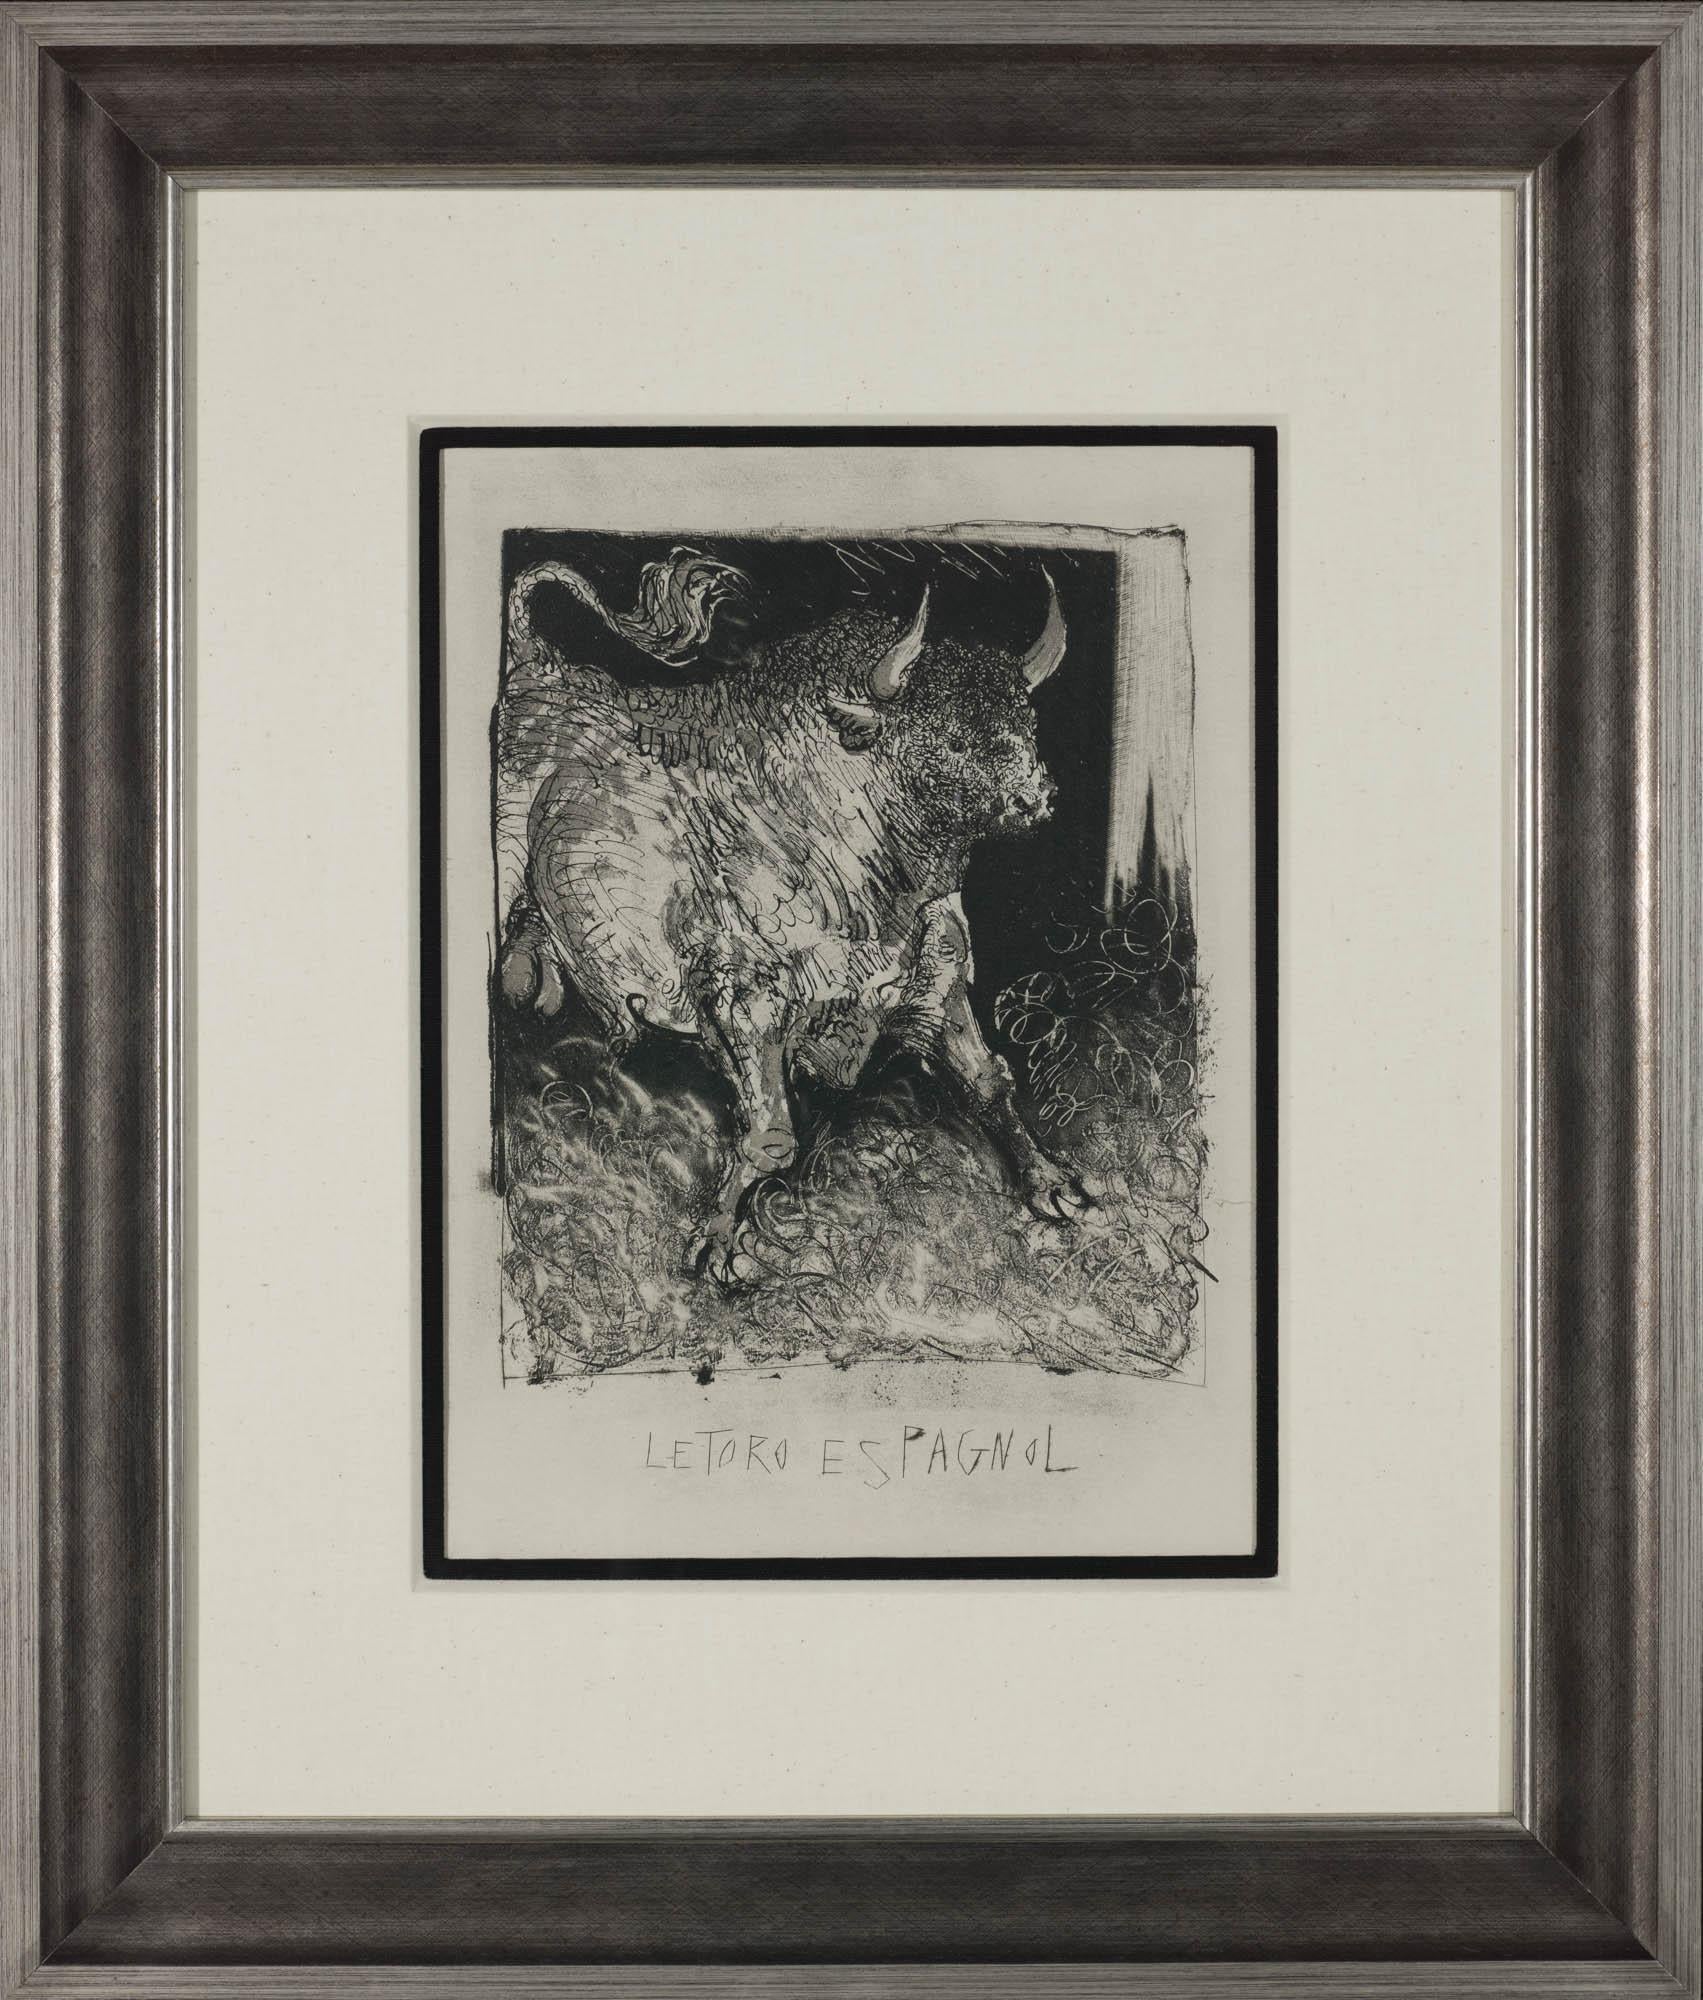 Le taureau, 1942 (Histoire Naturelle - Textes de Buffon, B.331) - Print de Pablo Picasso